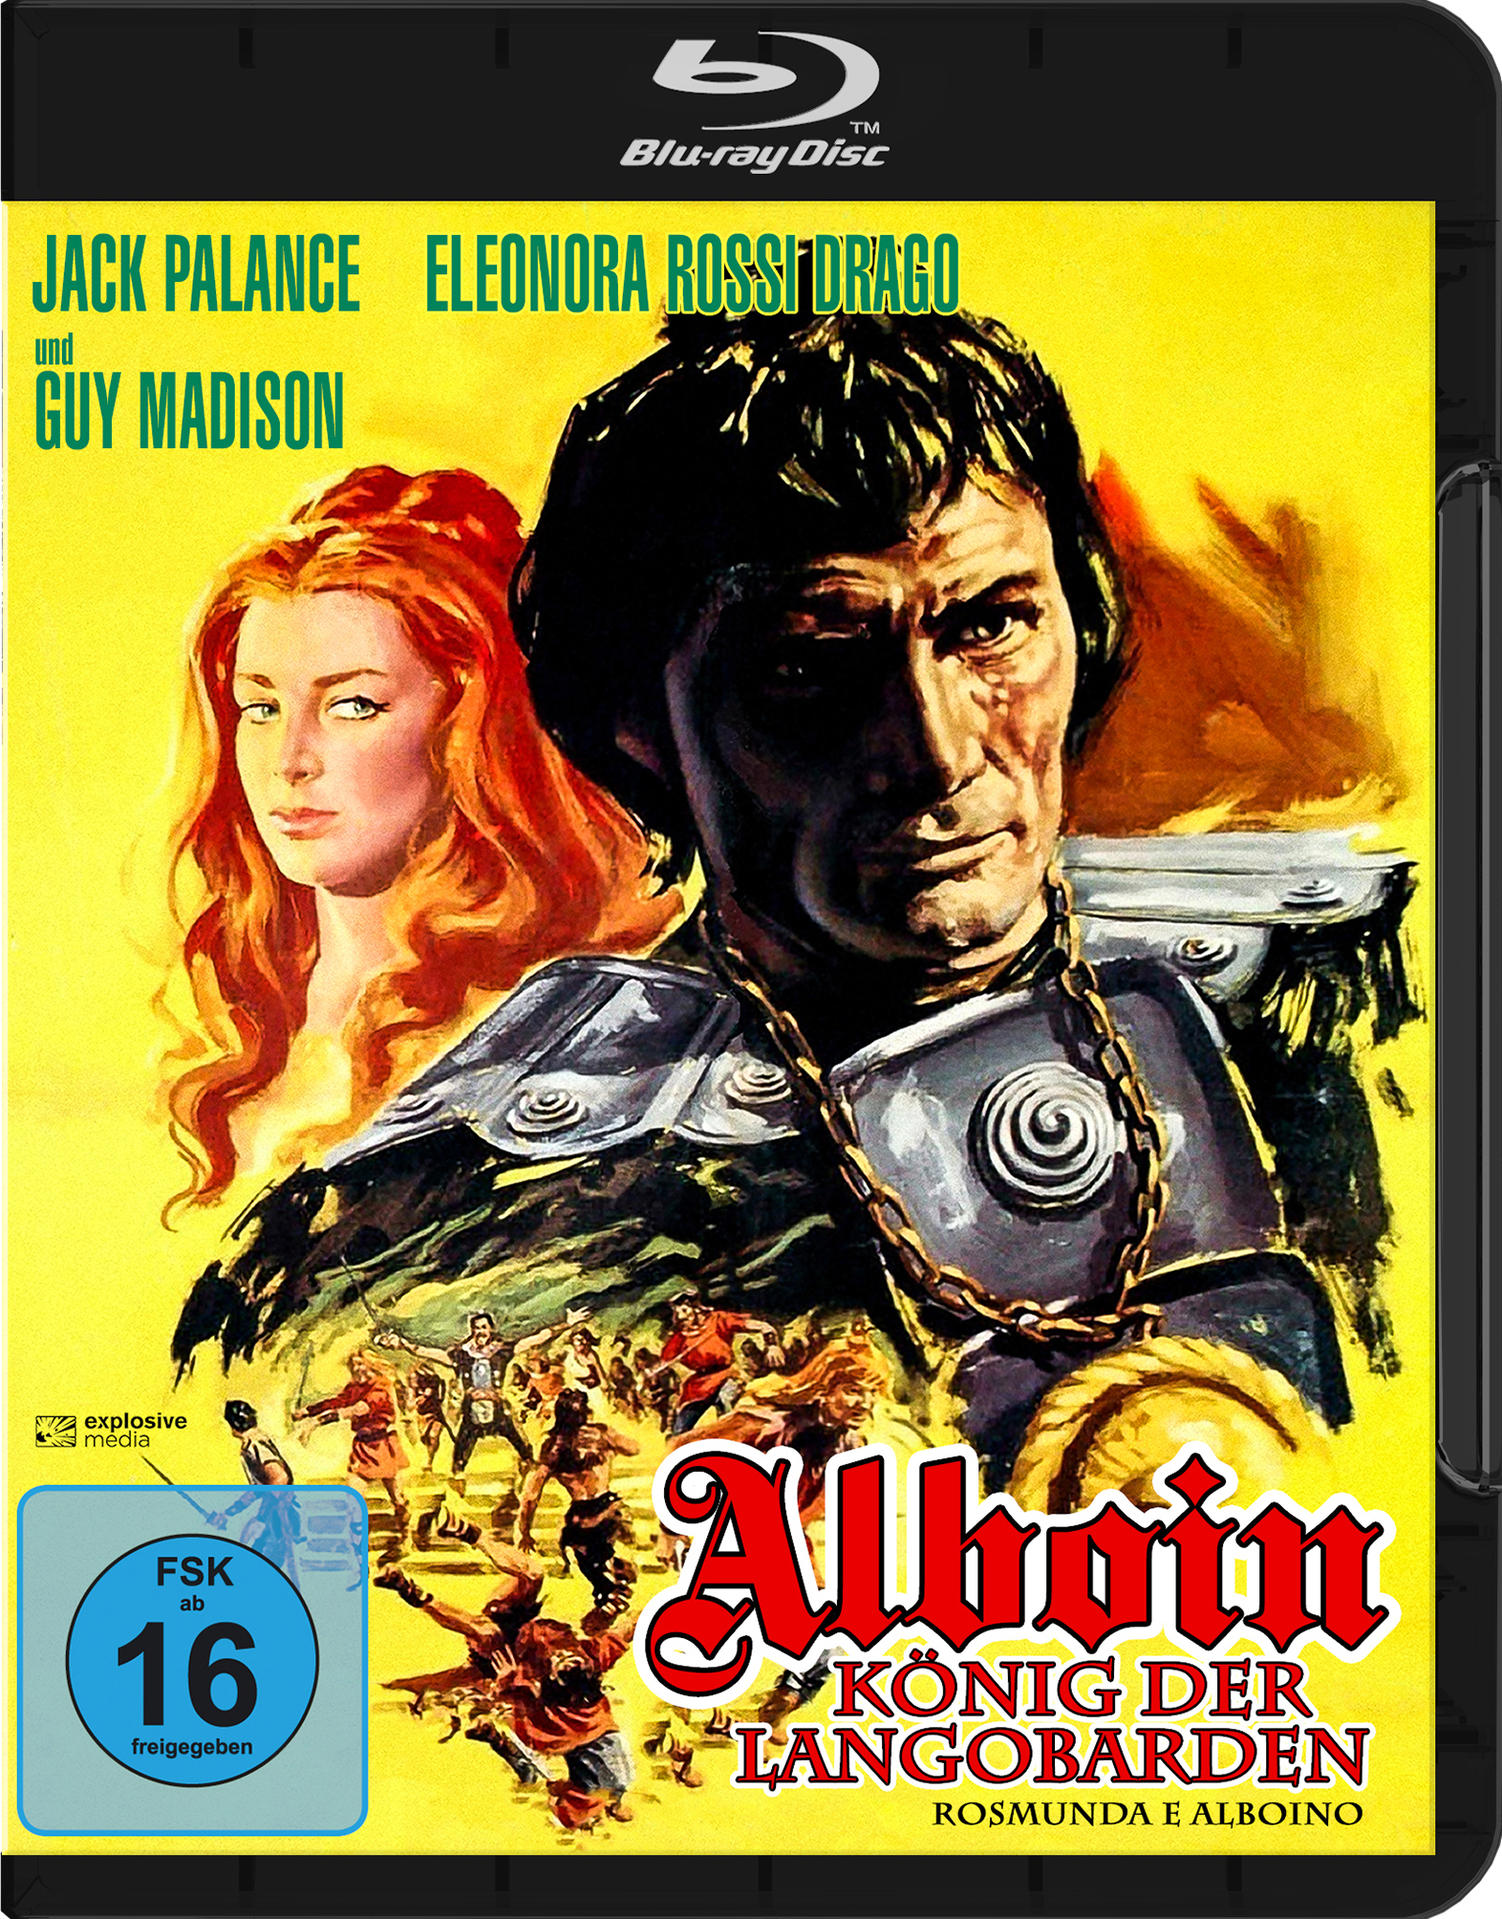 Blu-ray Alboin, der Langobarden König